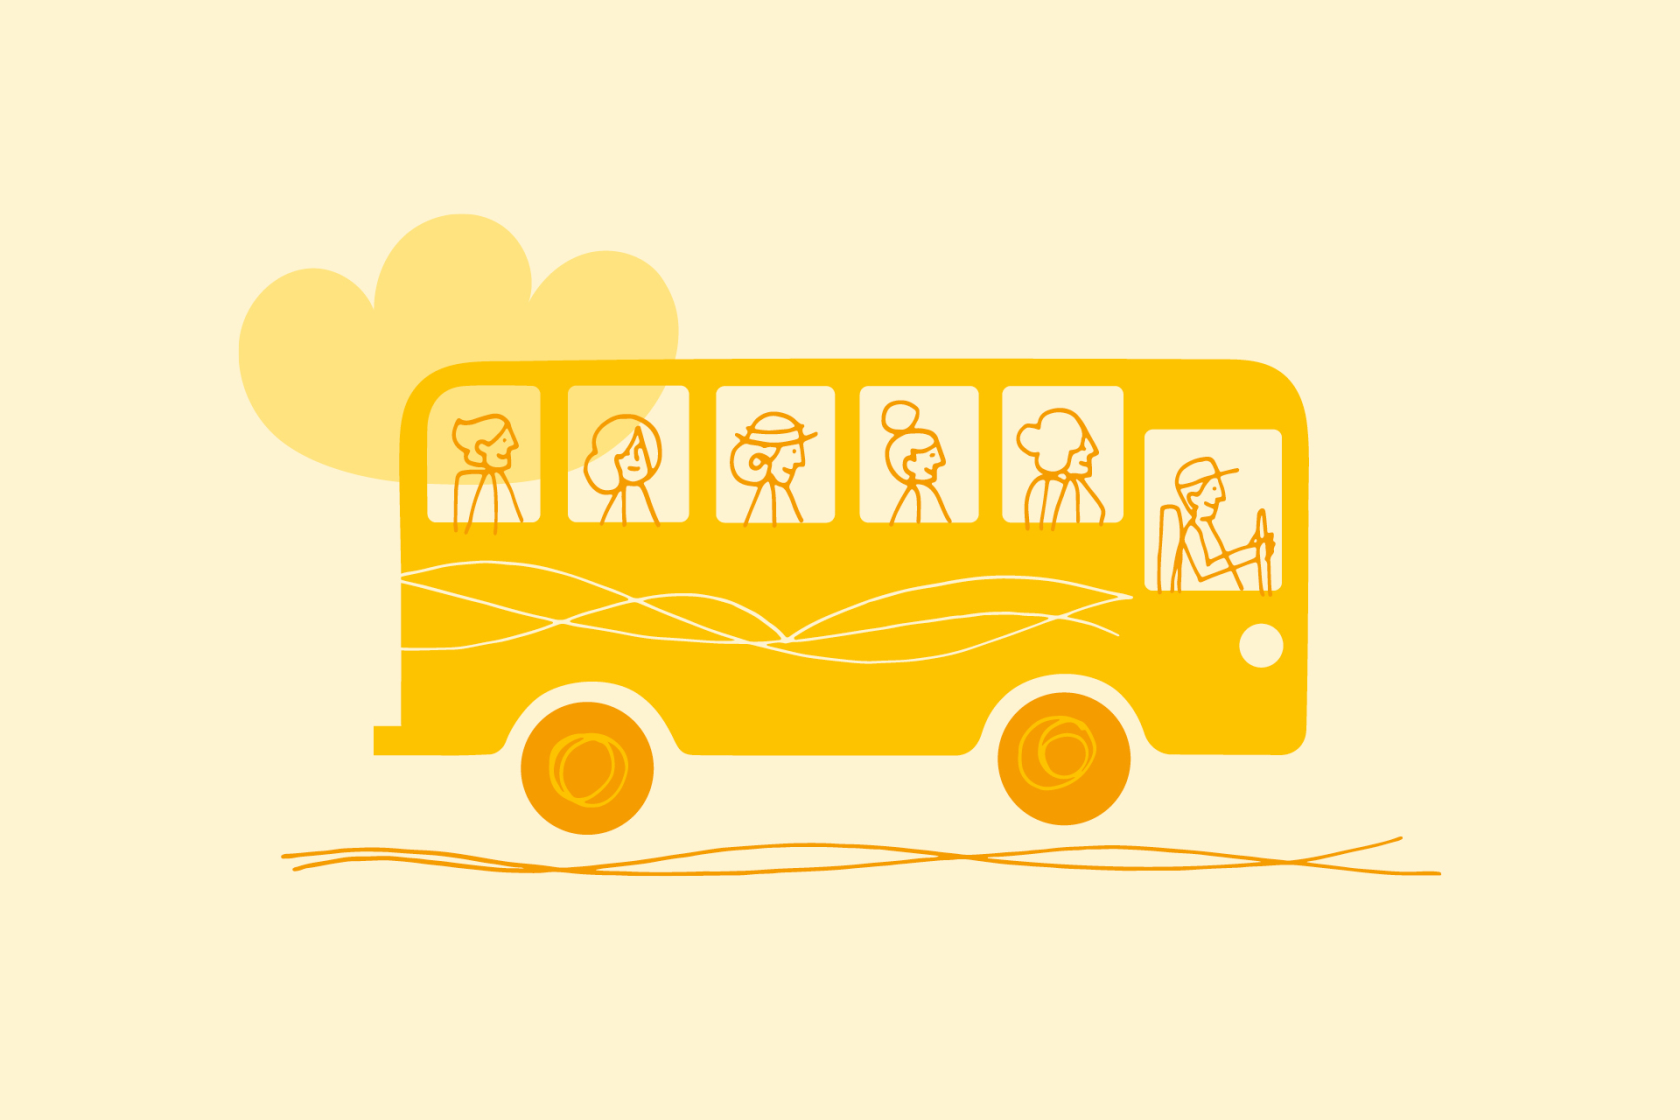 En gul buss på väg mot framtiden.